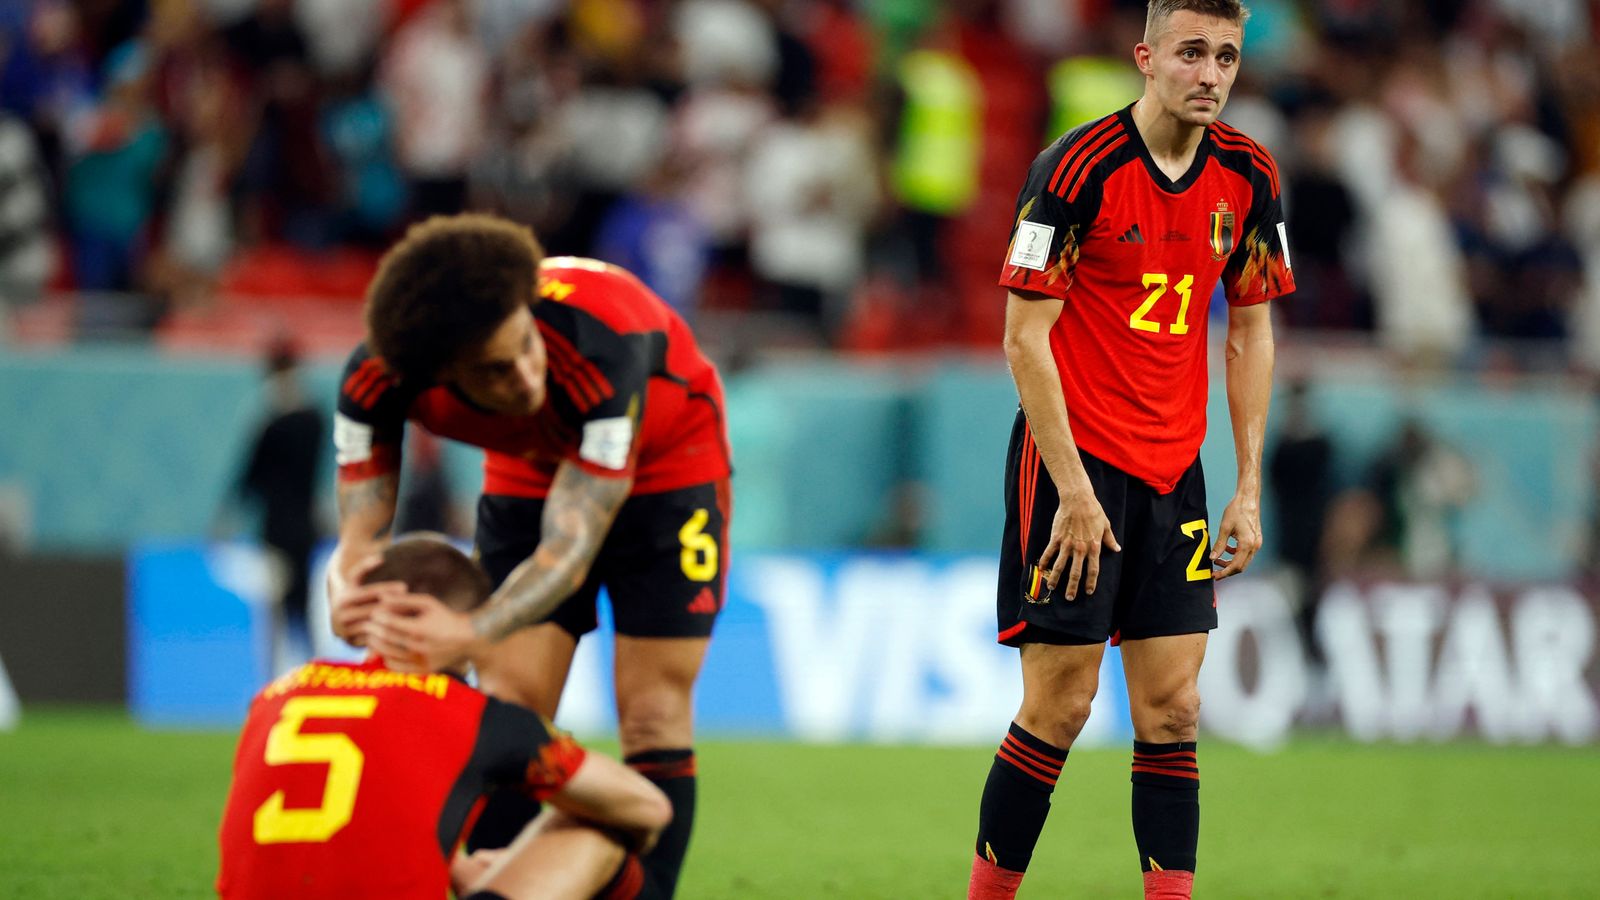 Thế hệ vàng của tuyển Bỉ lập kỷ lục buồn ở World Cup sau 24 năm - Ảnh 2